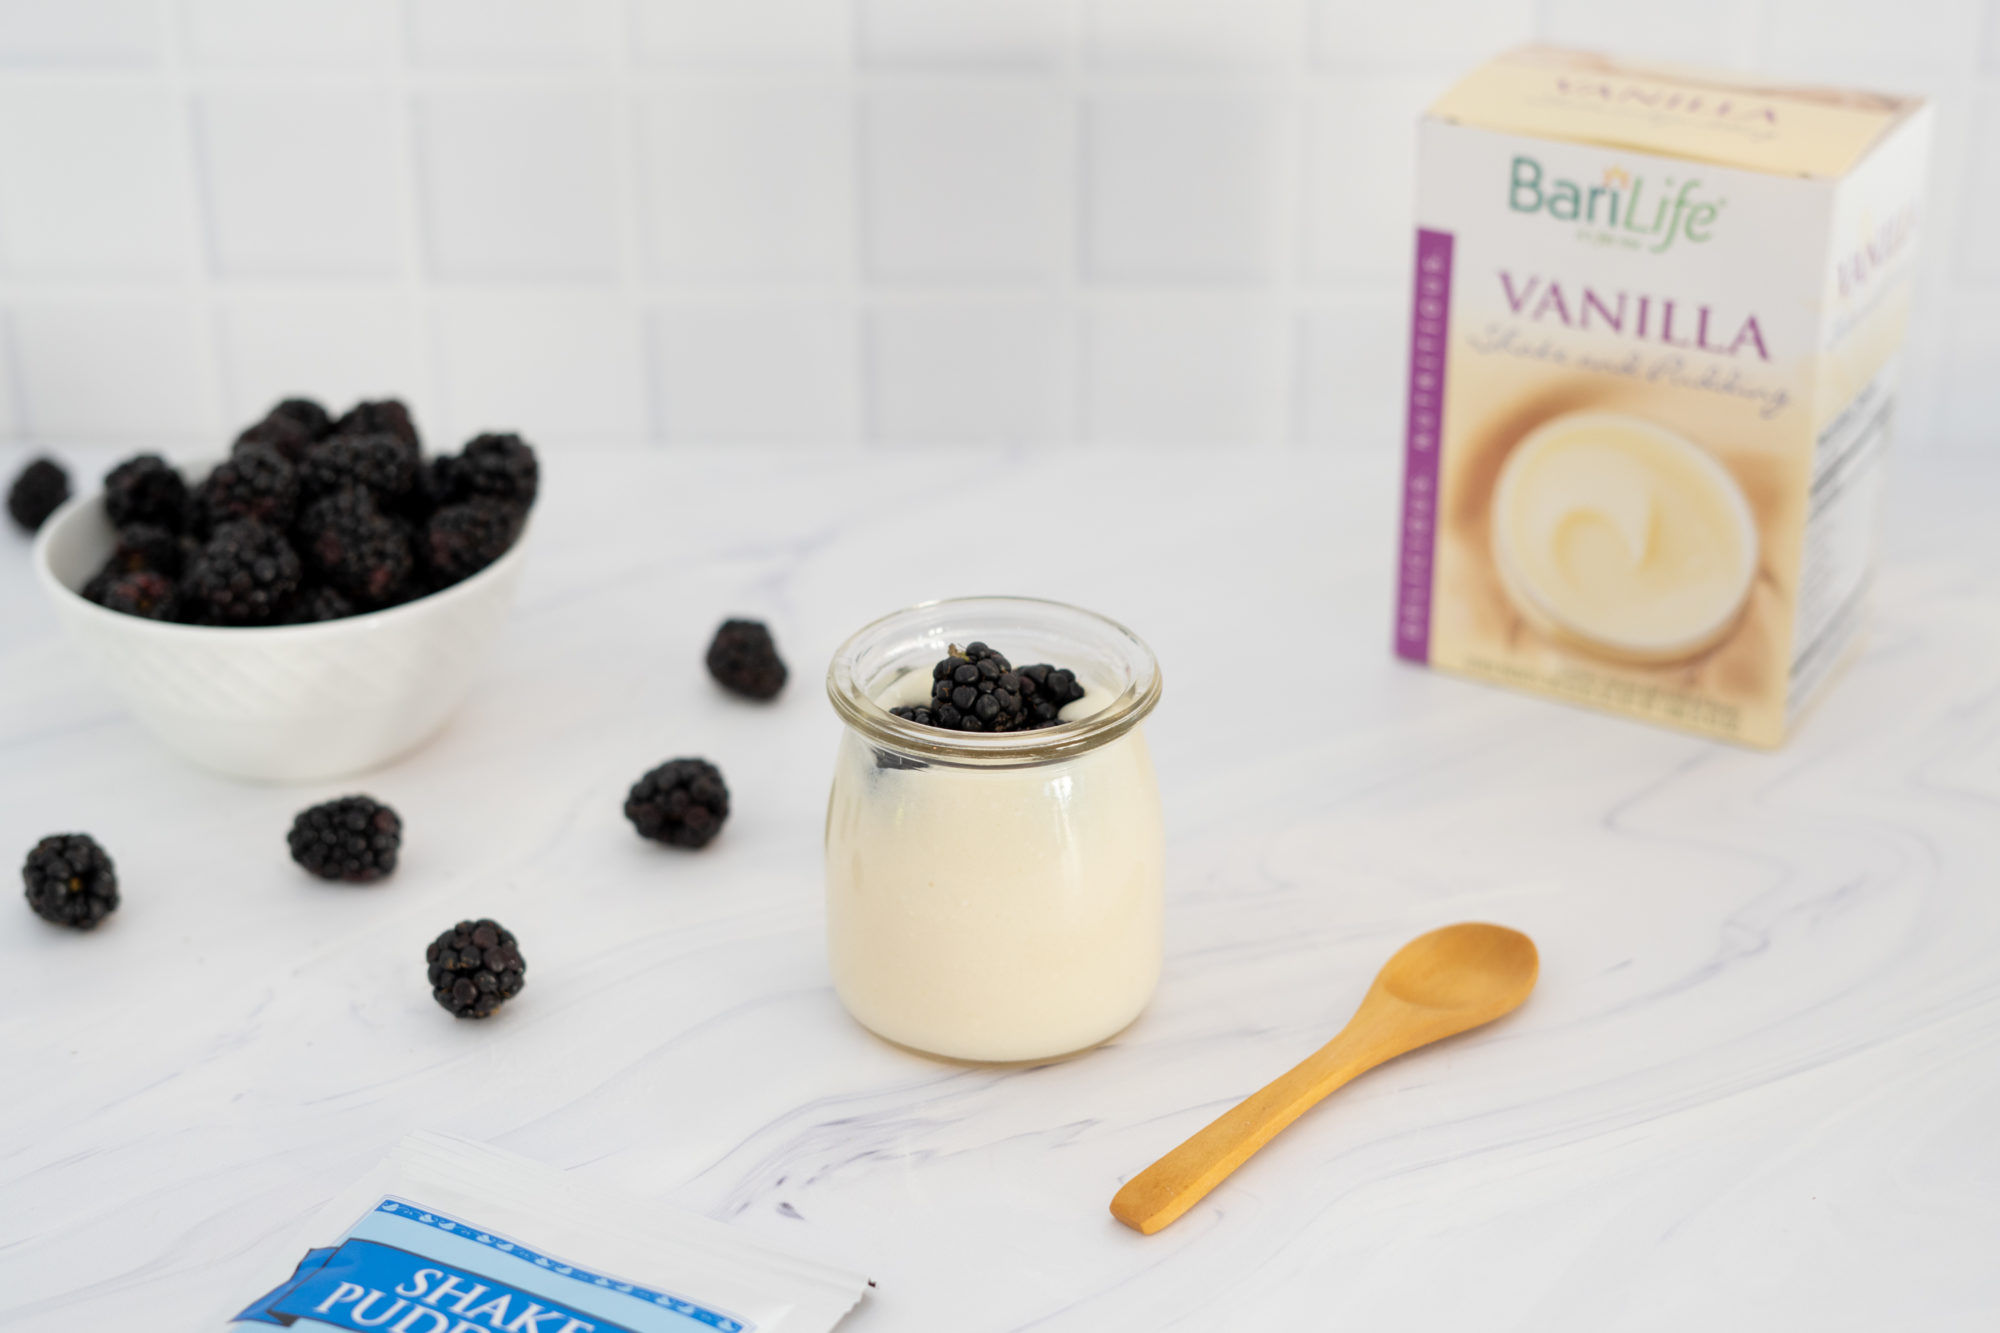 Blackberry Vanilla Pudding Bari Life